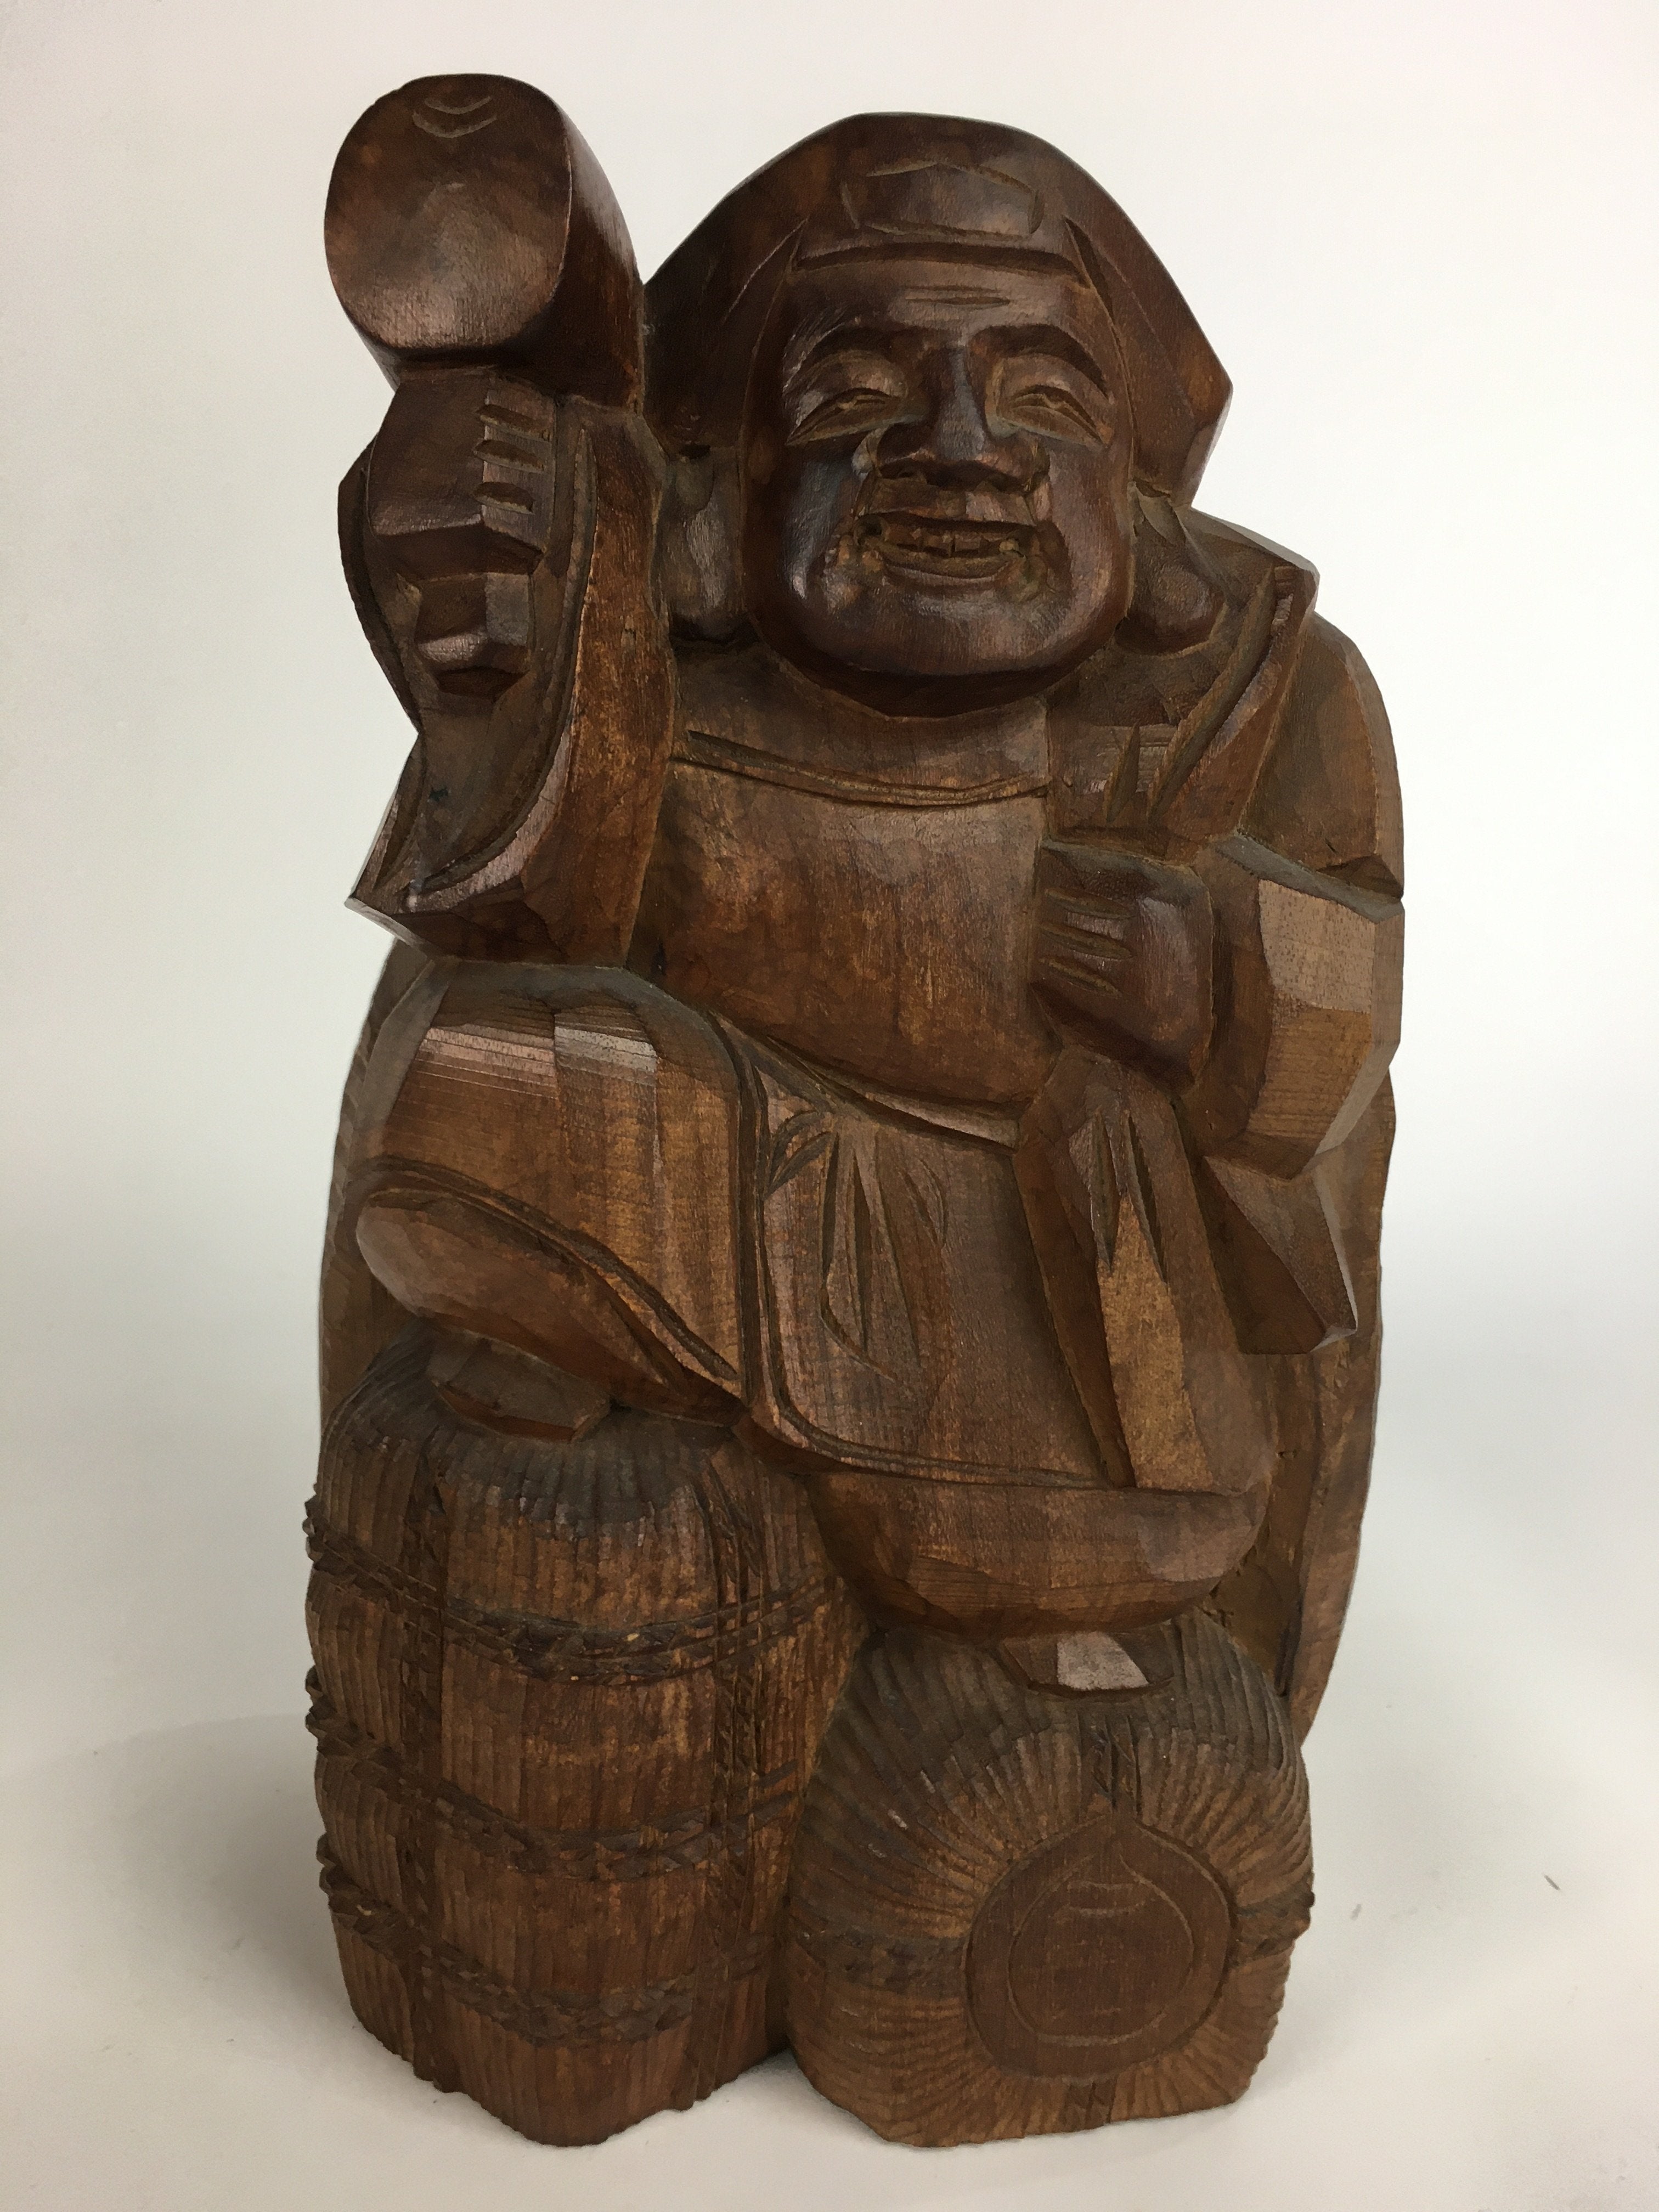 Japanese Wooden Statue Vtg 7 Lucky Gods Daikokuten Wood Carving Brown BD645